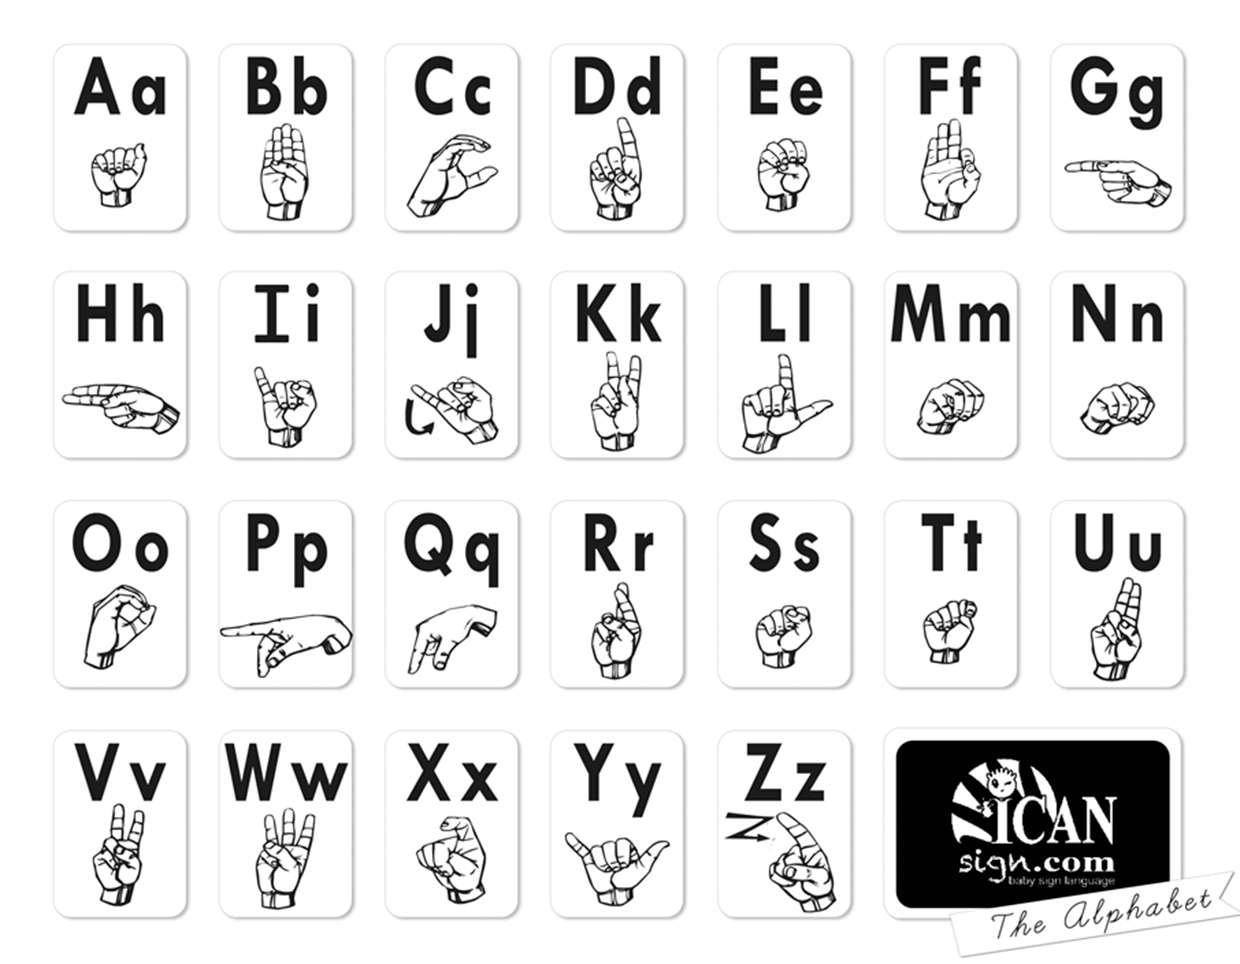 la-langue-des-signes-am-ricaine-pour-apprendre-l-anglais-speakeasy-news